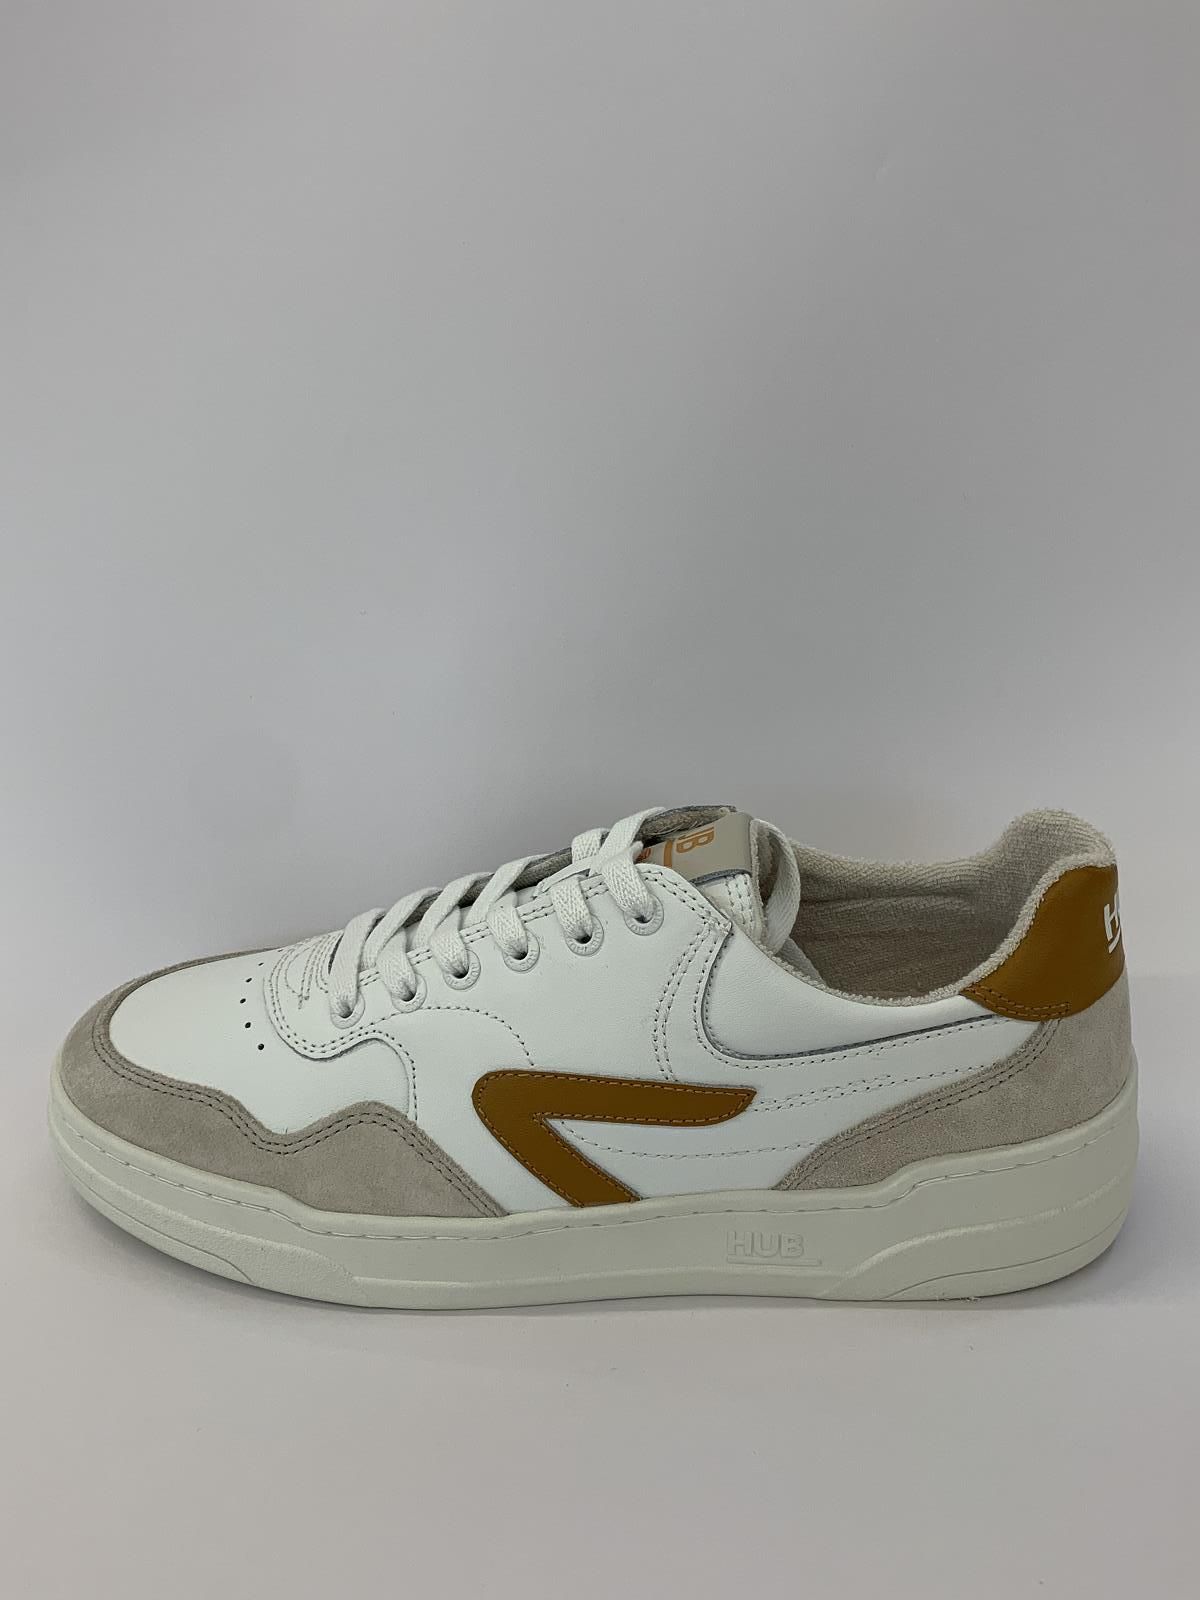 HUB Sneaker Wit+kleur heren (Sneaker Hub Cognac - Court-Z) - Schoenen Luca